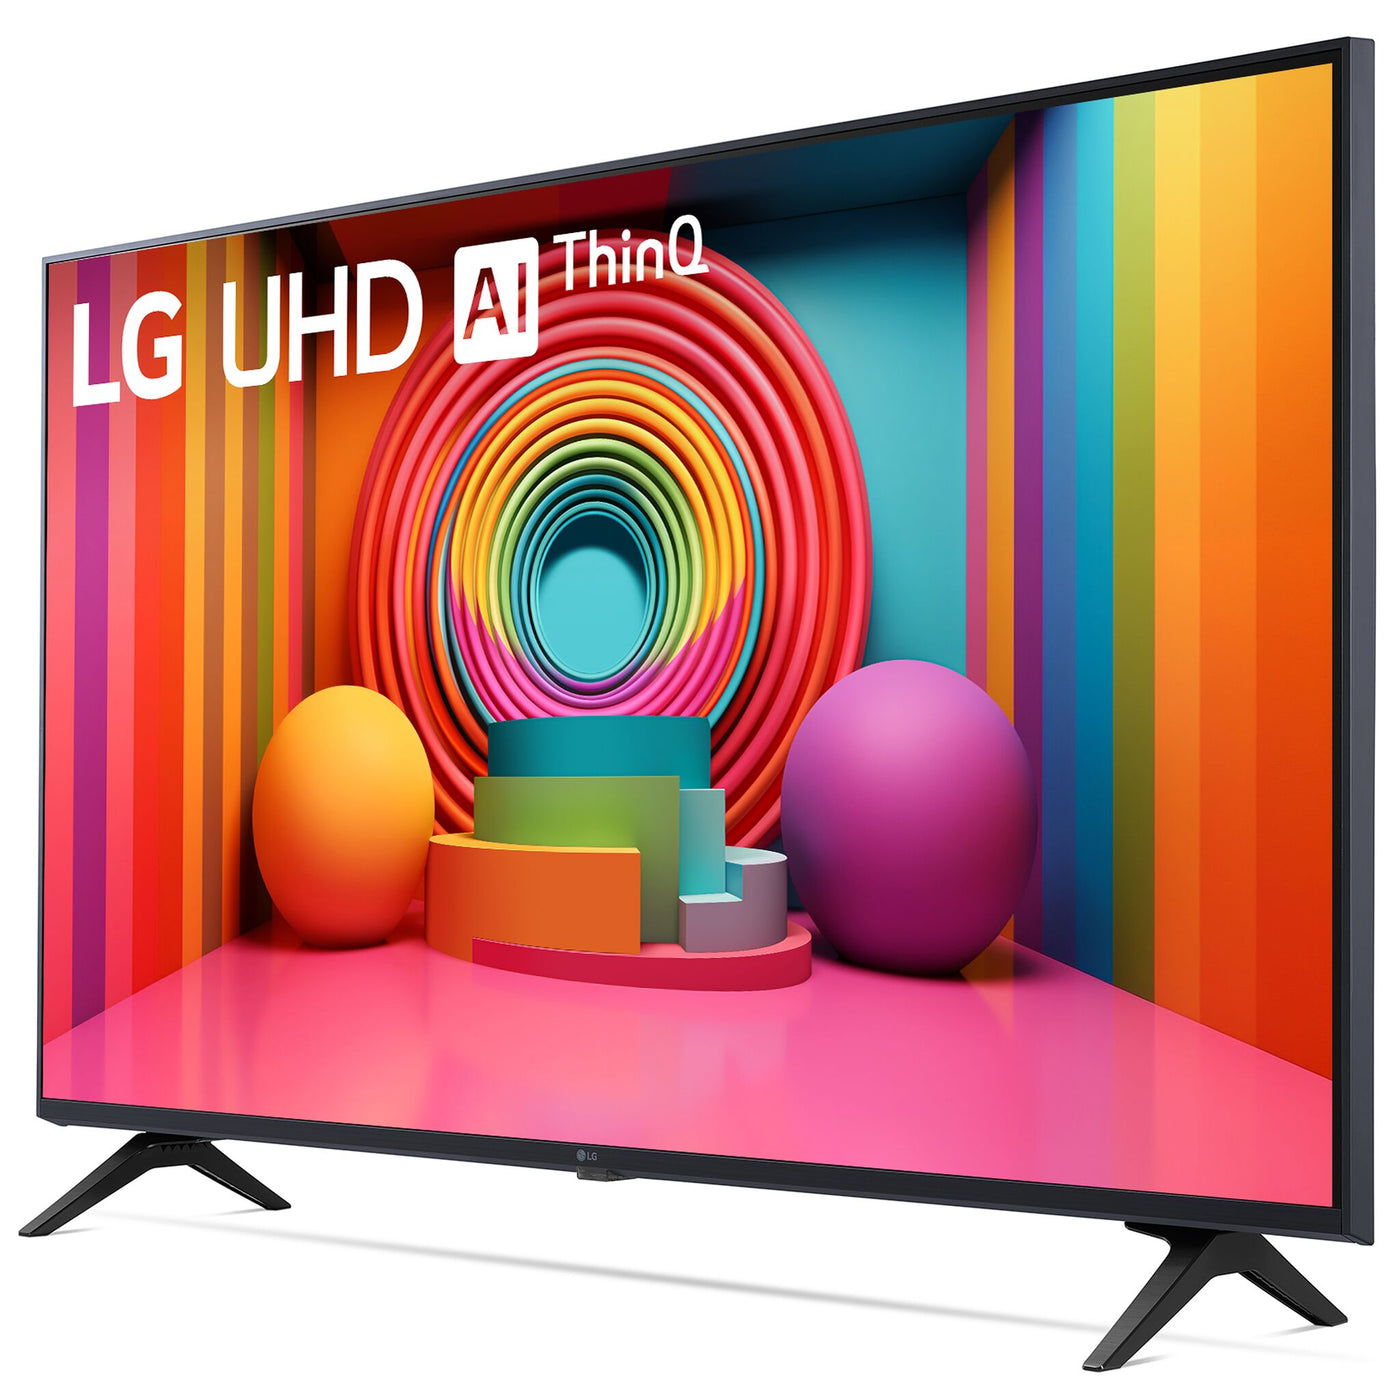 LG 50" UHD 4K Smart LED TV - 50UT7570PUB